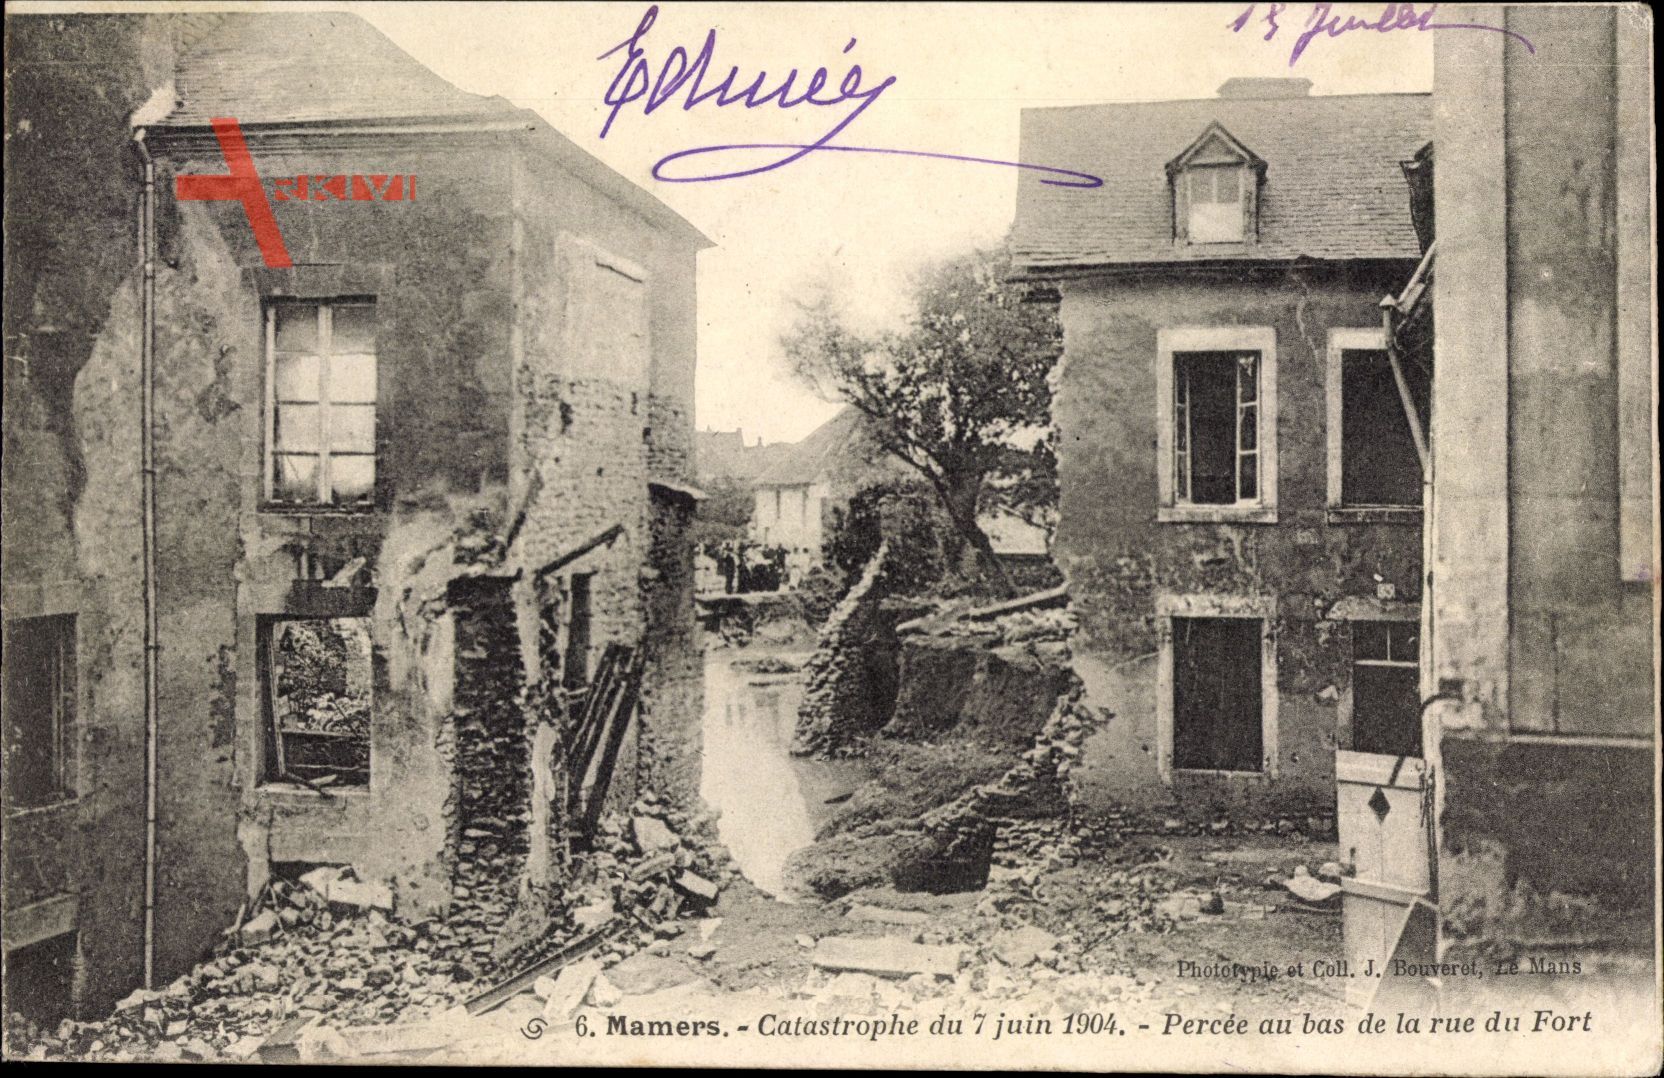 Mamers Sarthe, Catastrophe du 7 juin 1904, Percee au bas de la rue du Fort